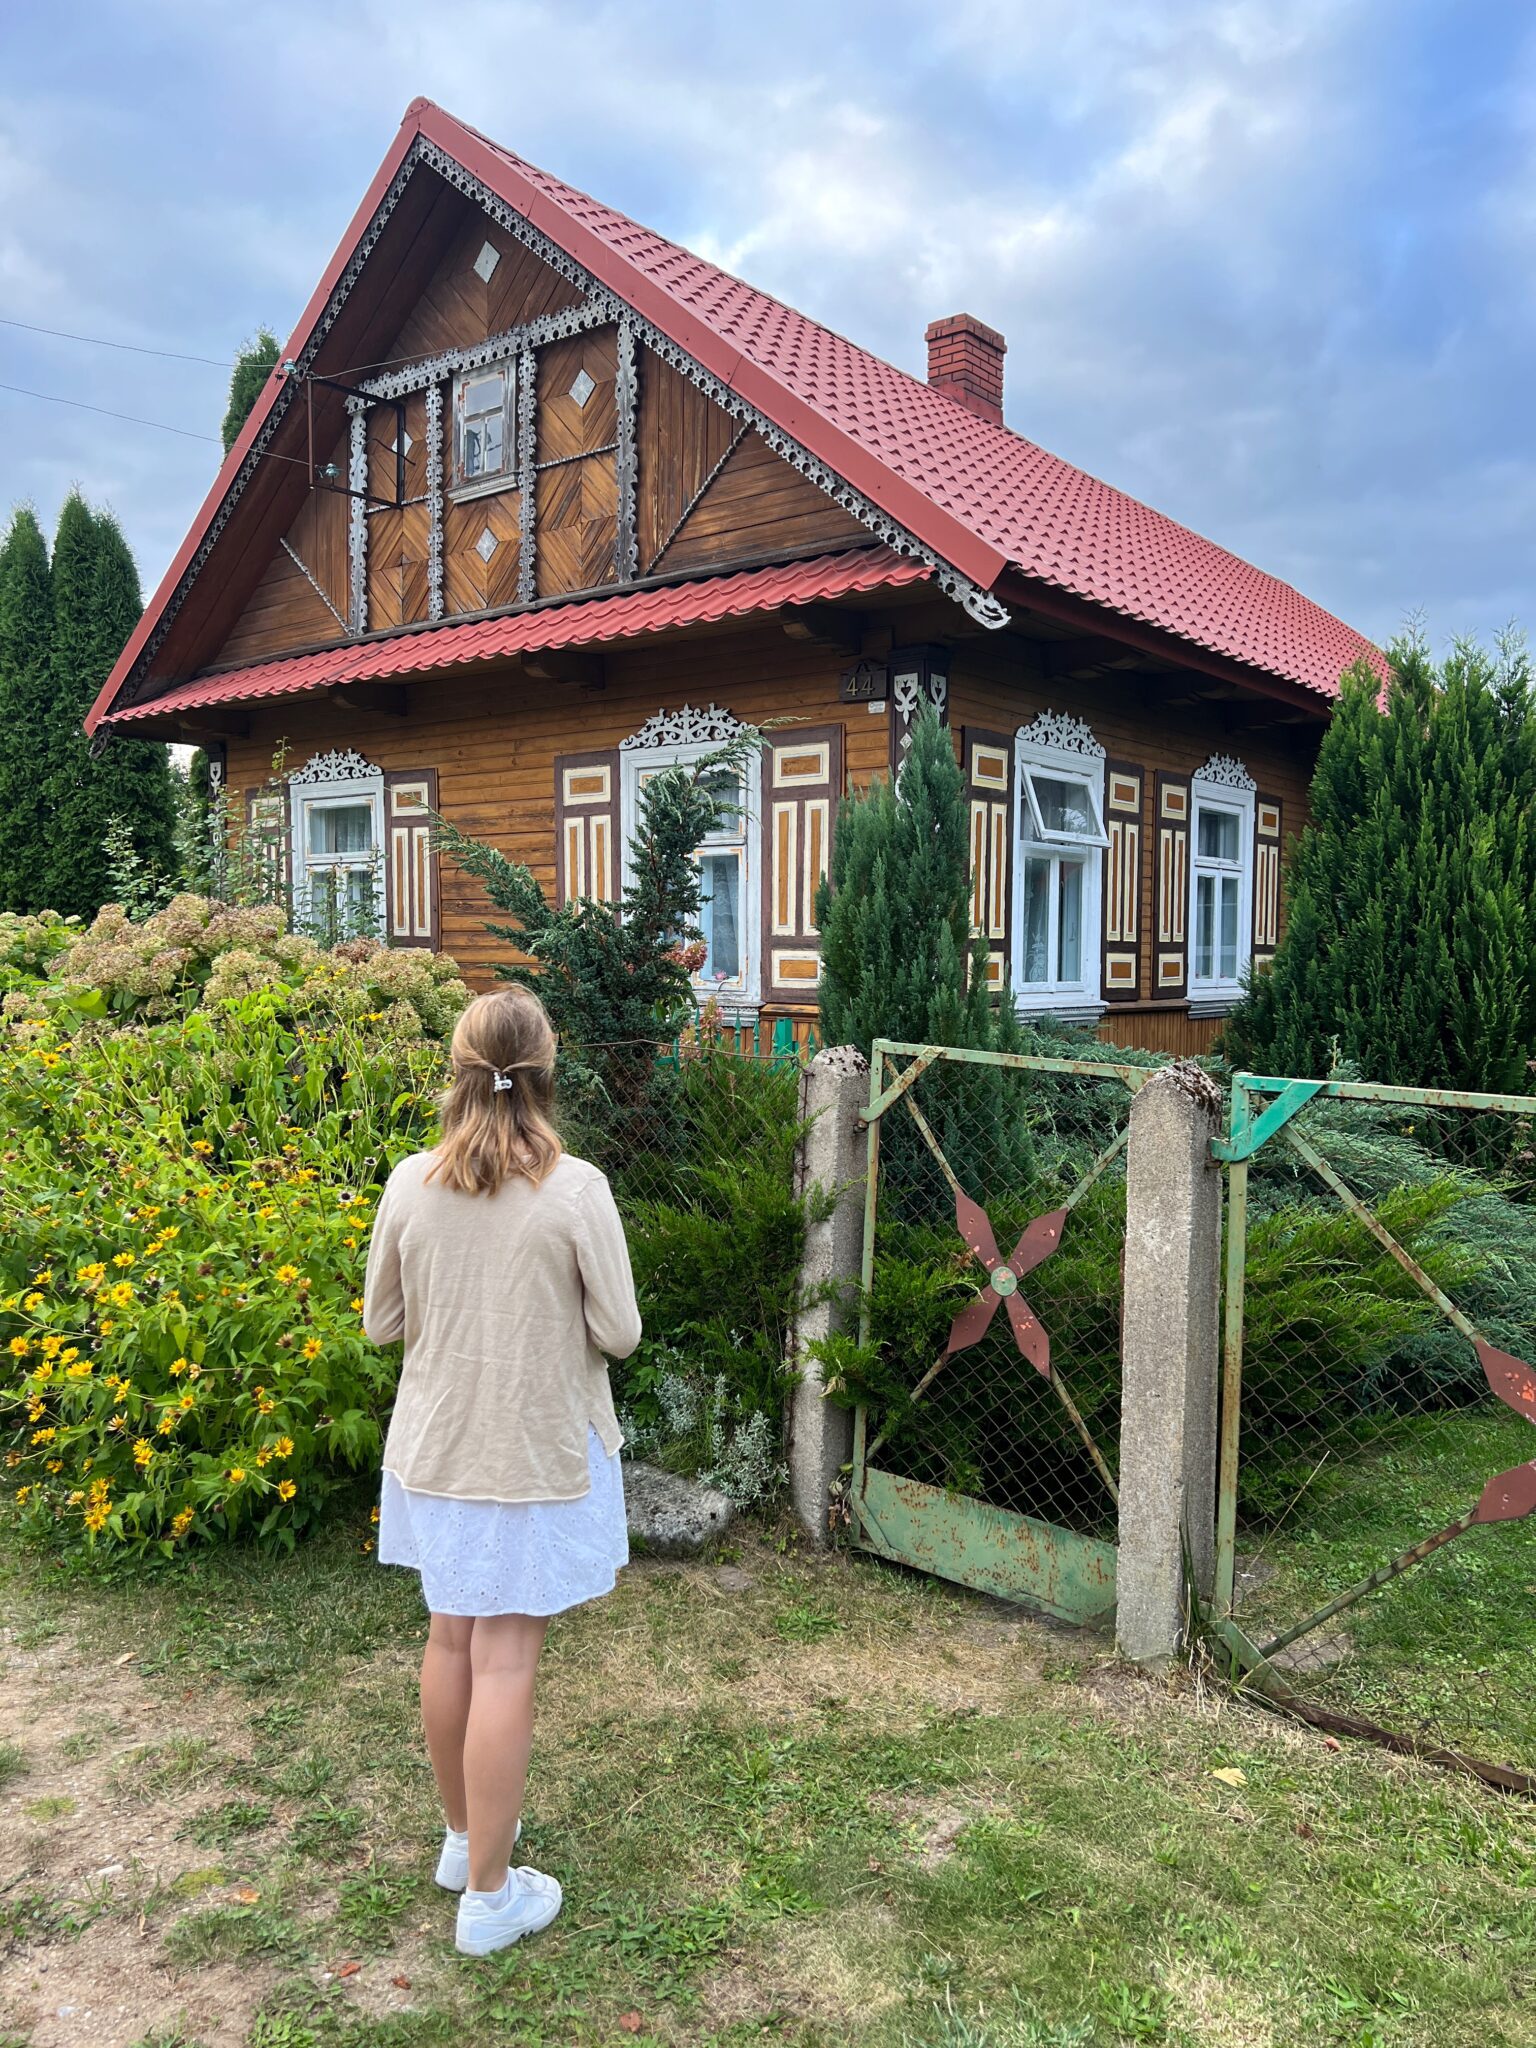 Wieś Puchły tradycyjna chata podlaska dziewczyna